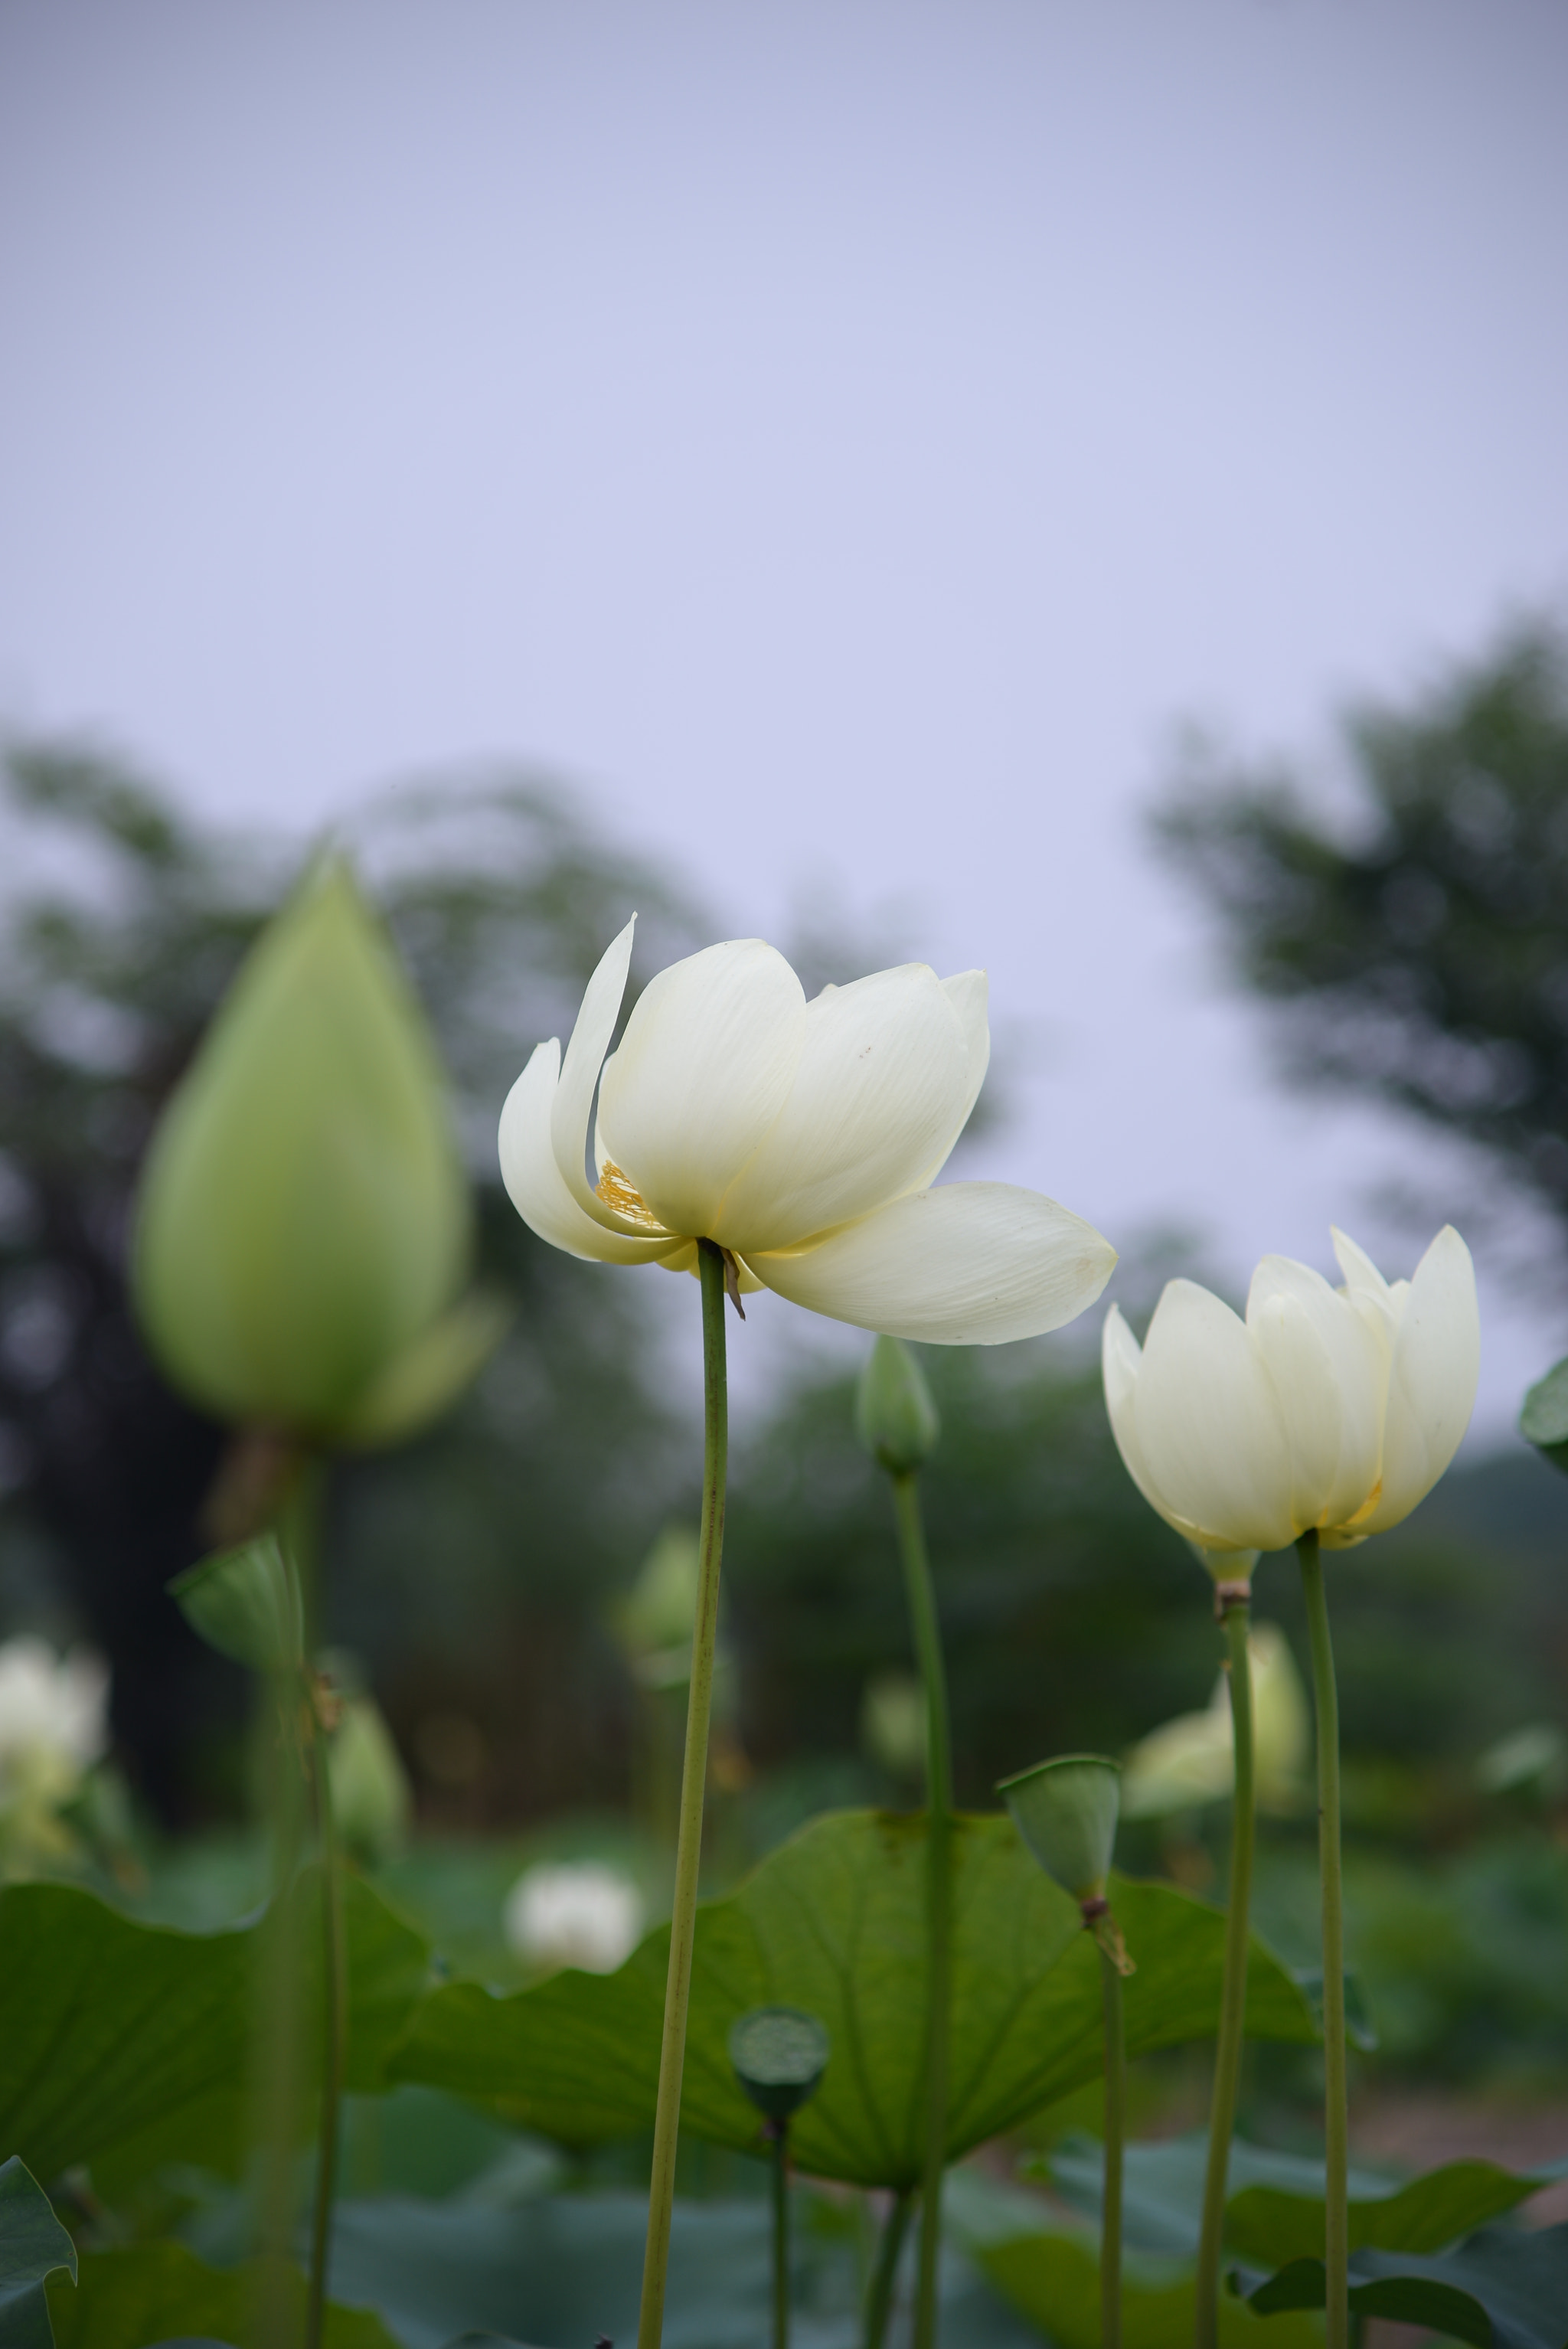 AF Zoom-Nikkor 70-210mm f/4 sample photo. 又是一年花开时，lotus flower photography